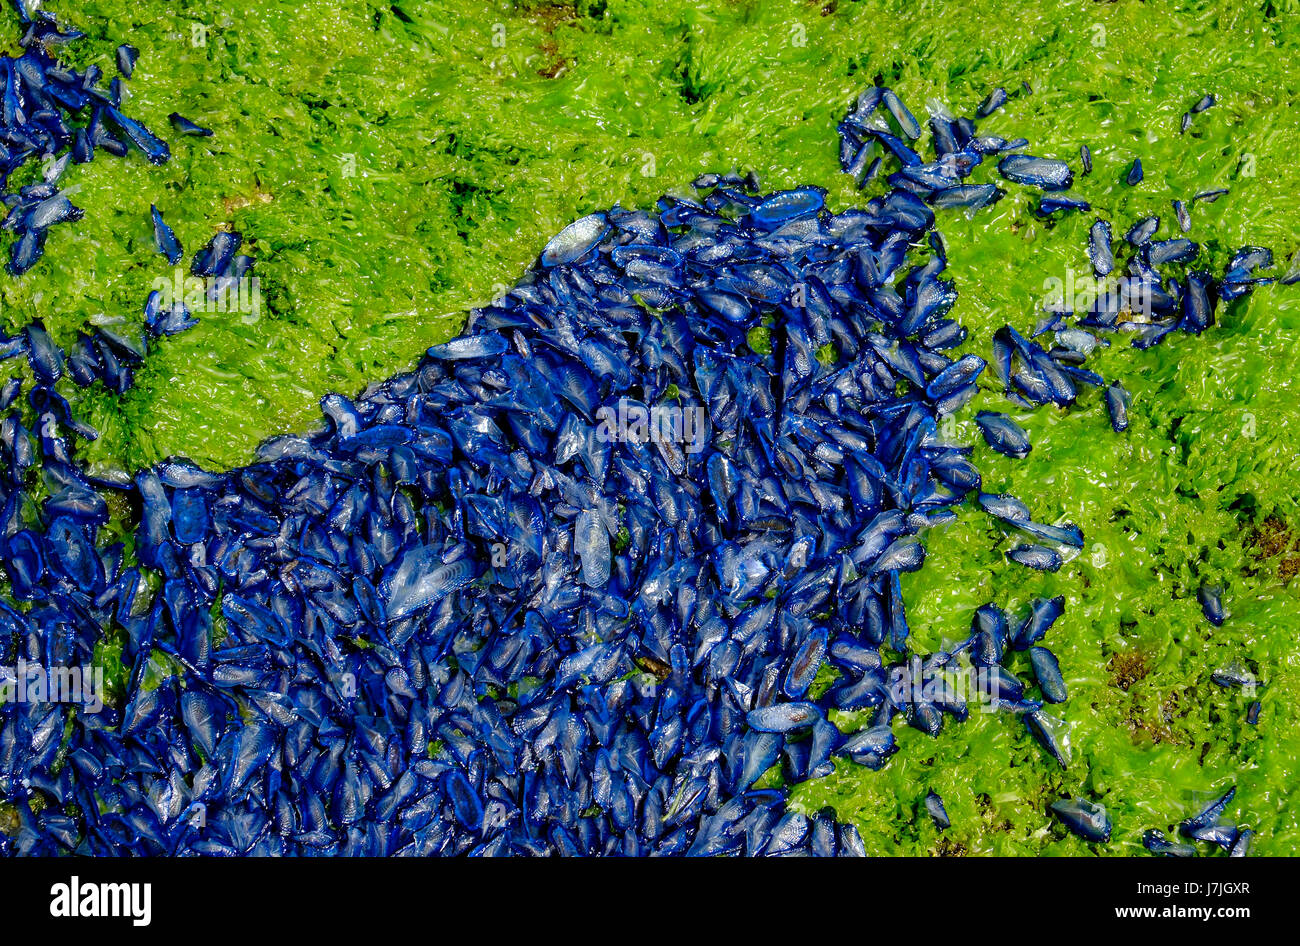 Velella, blu brillante creature del mare, Sardegna, Italia Foto Stock